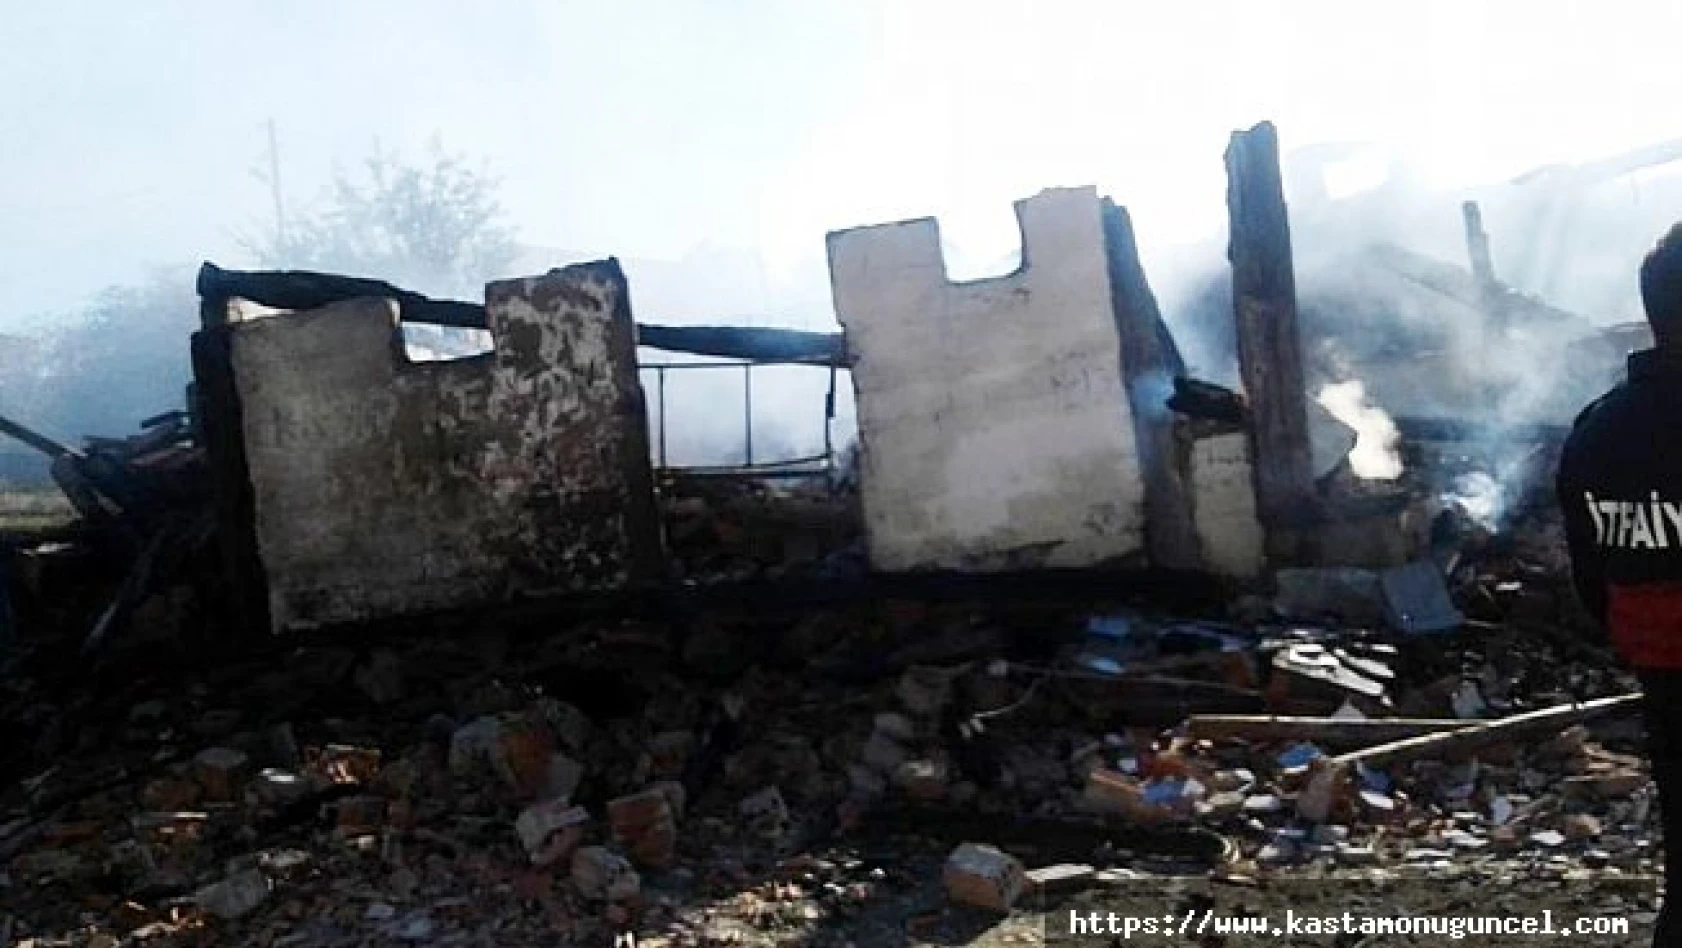 Kastamonu'da yangın: 1 ev tamamen yandı